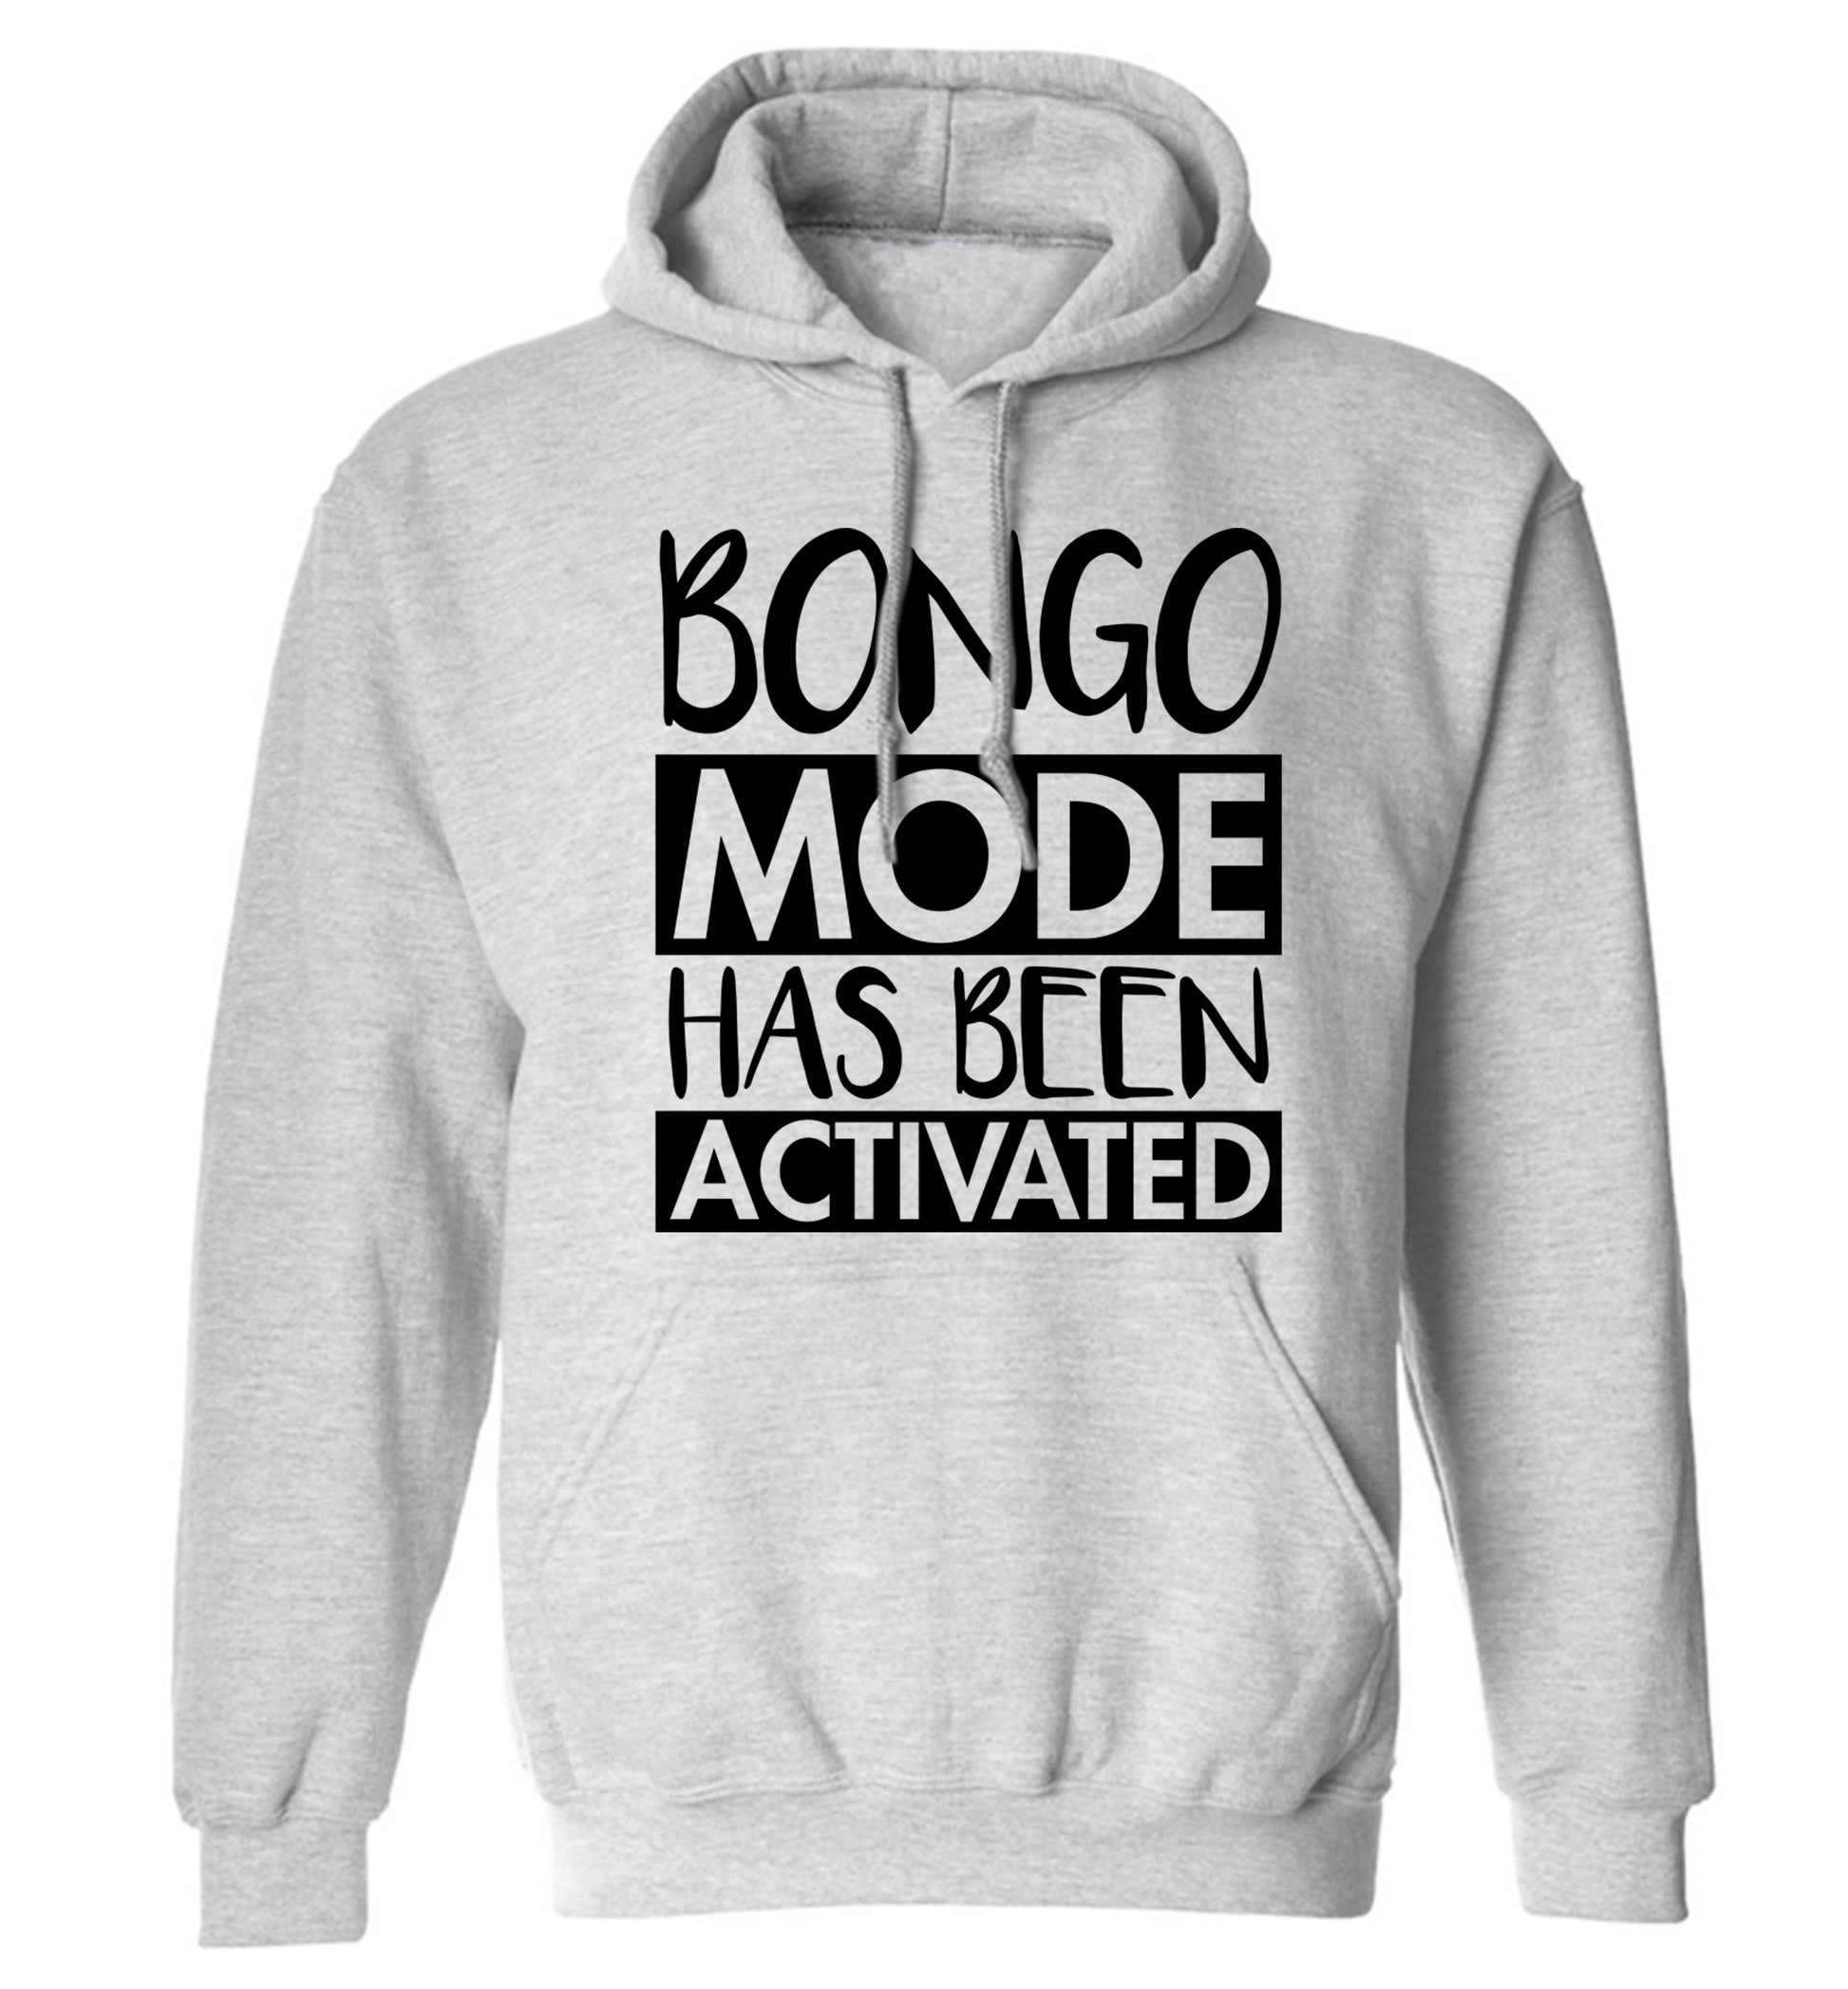 Bongo mode has been activated adults unisexgrey hoodie 2XL